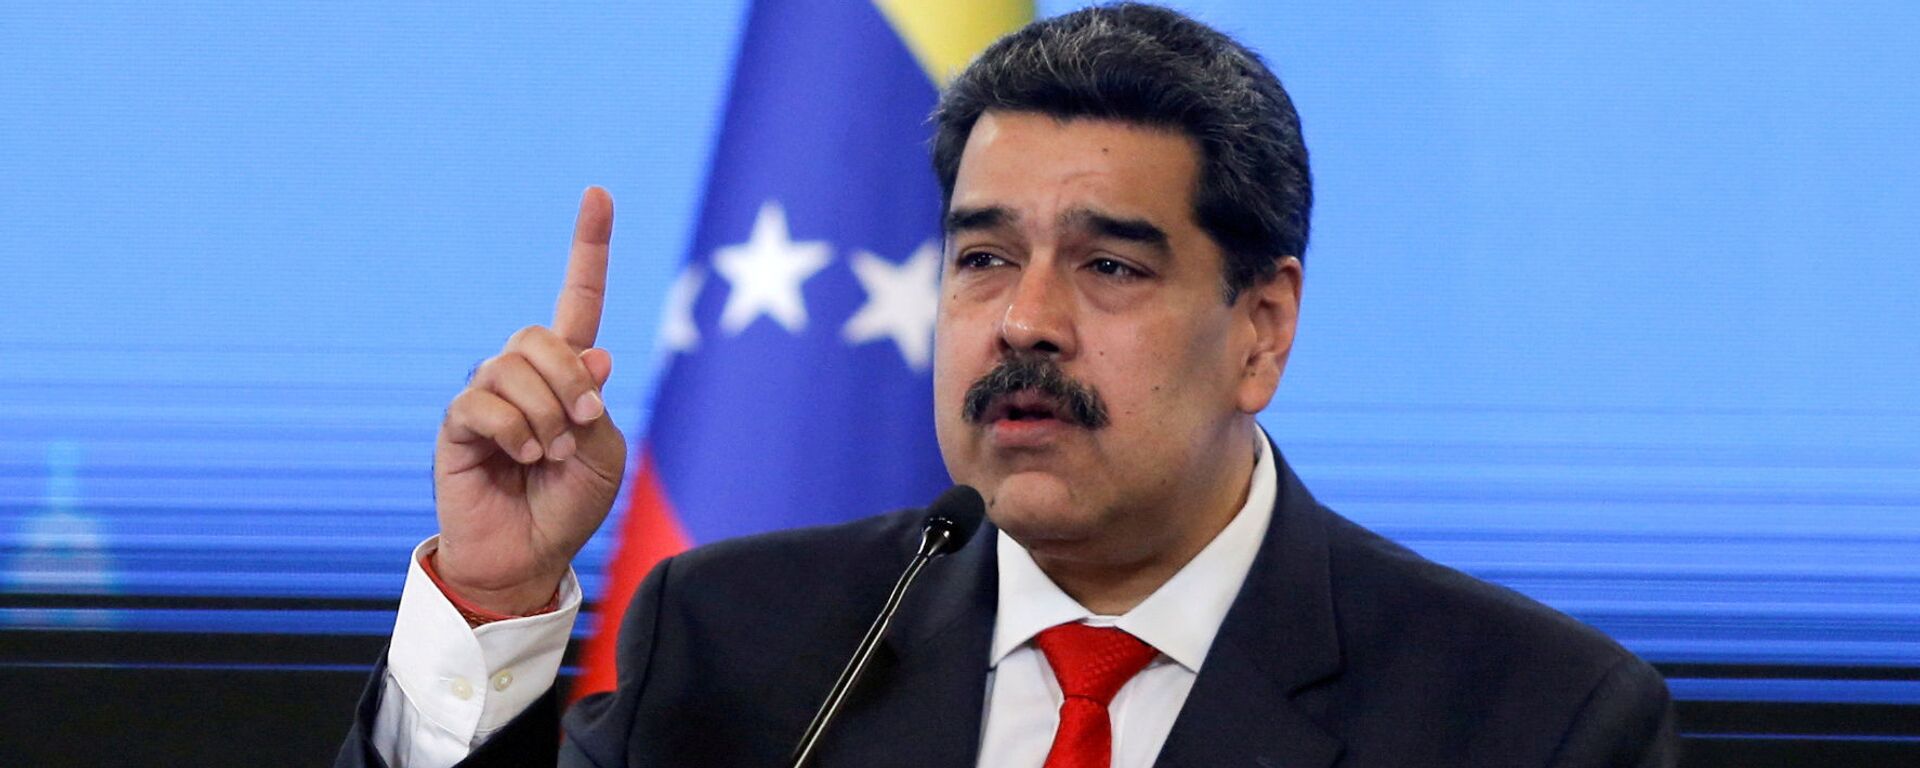 Nicolás Maduro, presidente de Venezuela - Sputnik Mundo, 1920, 12.07.2021